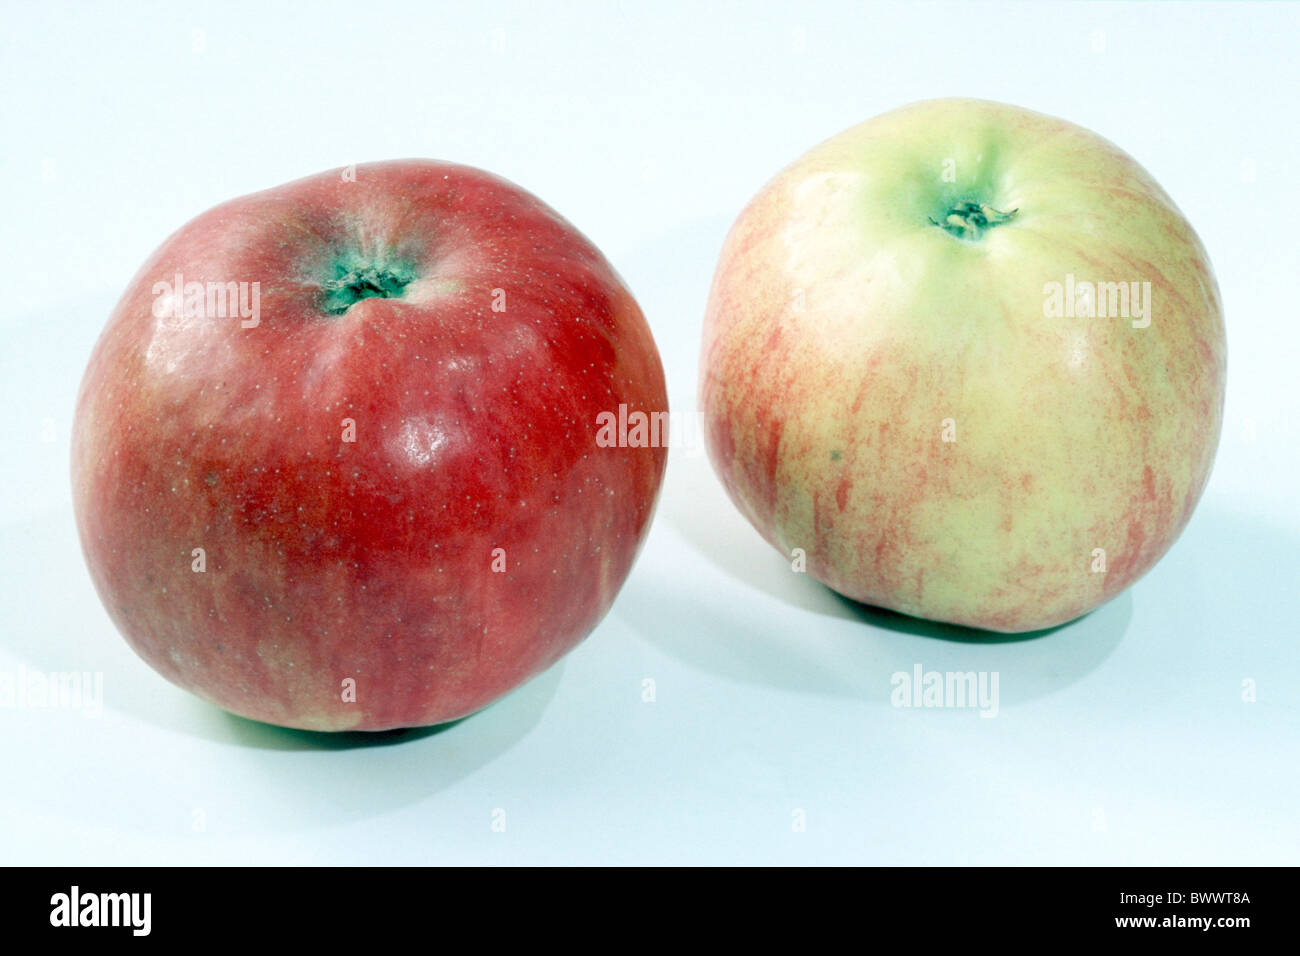 Domestic Apple (Malus domestica), variety: Idared, studio picture. Stock Photo